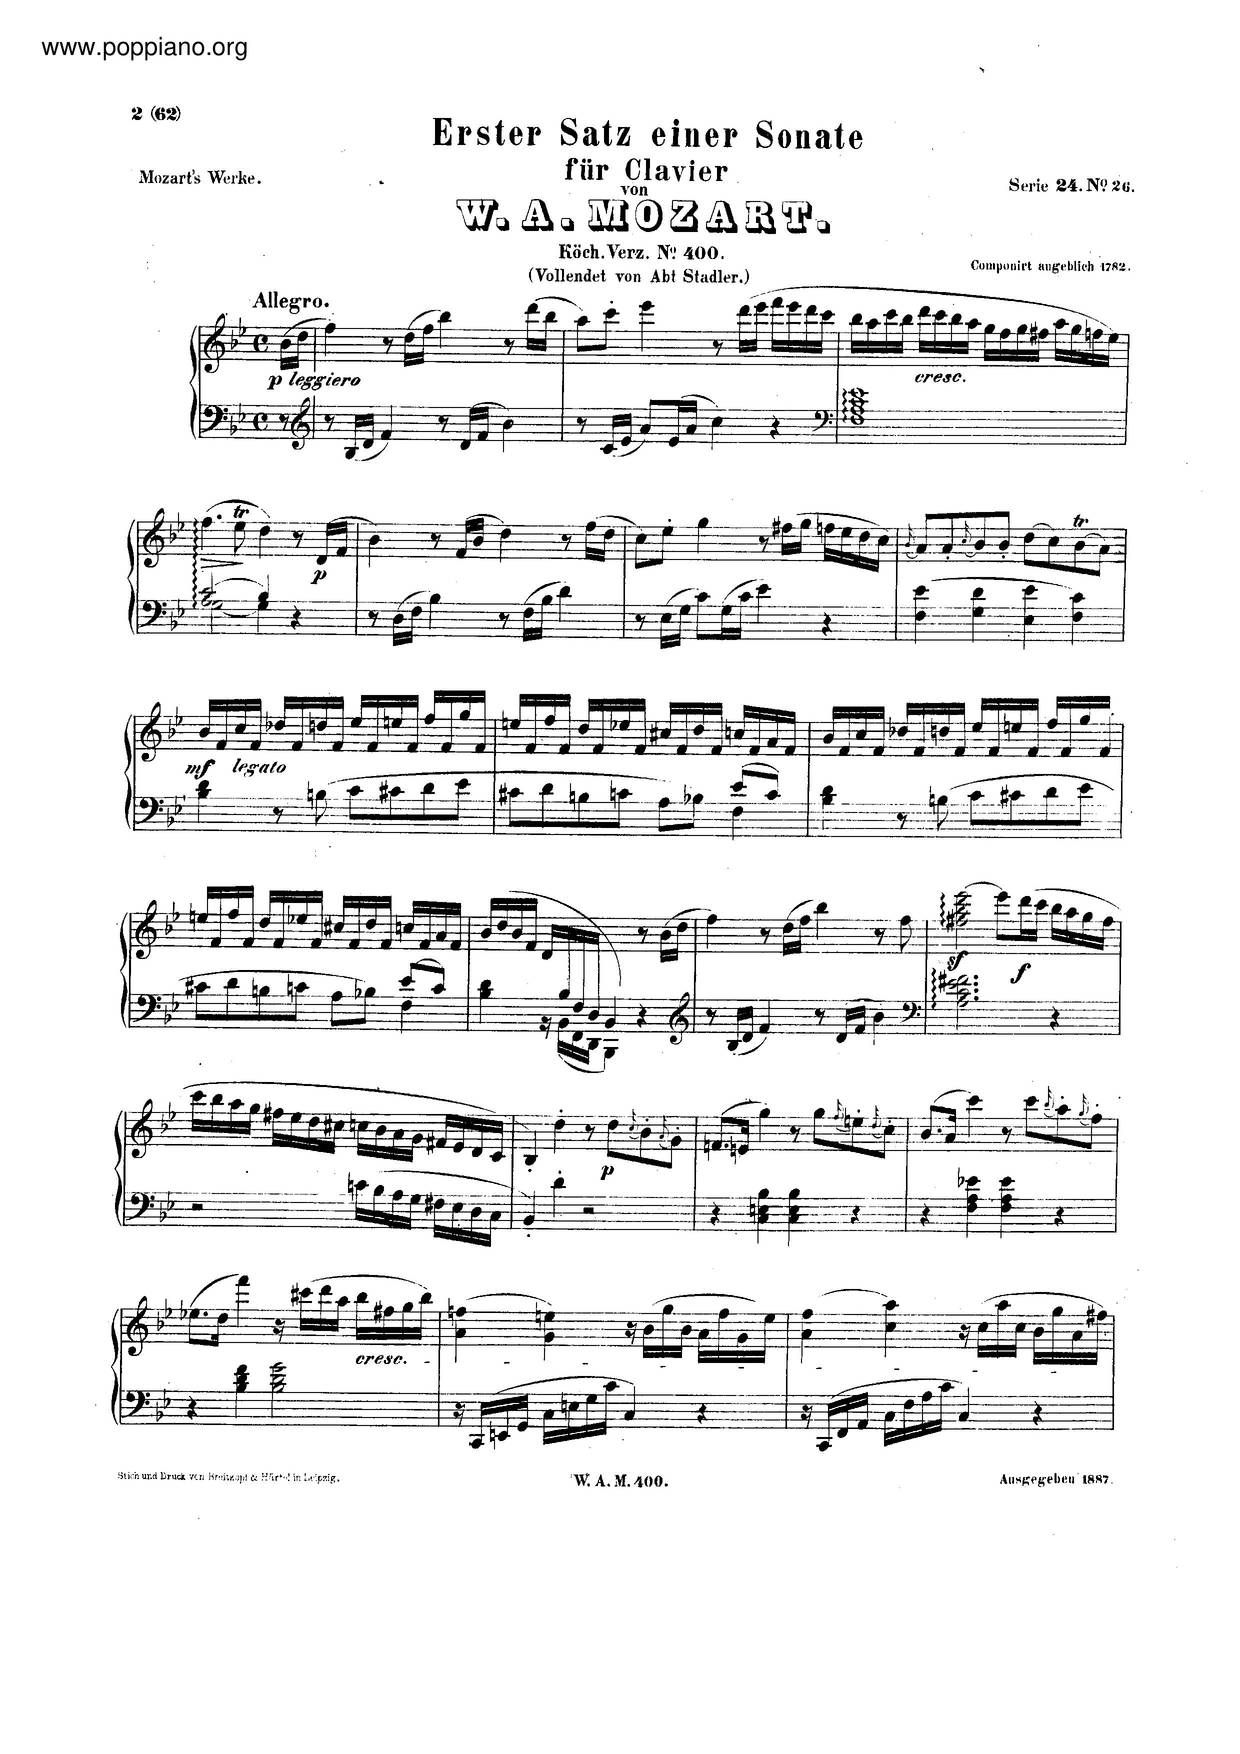 Allegro In B-Flat Major, K. 400/372A Score